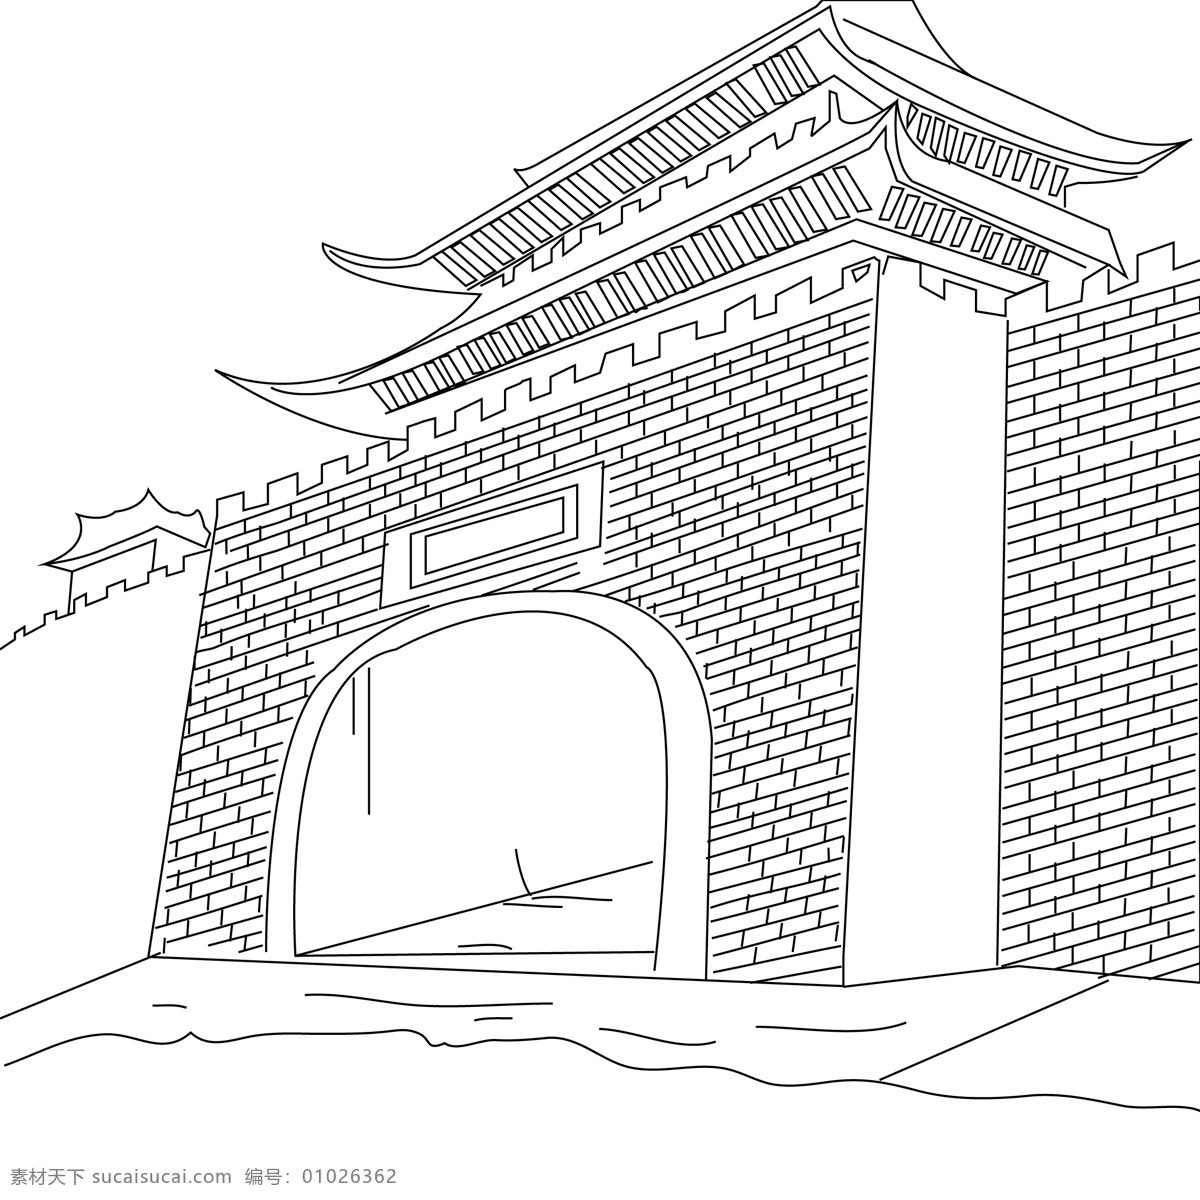 手绘线描城楼 城楼 手绘 线描 砖墙 黑白 文化艺术 传统文化